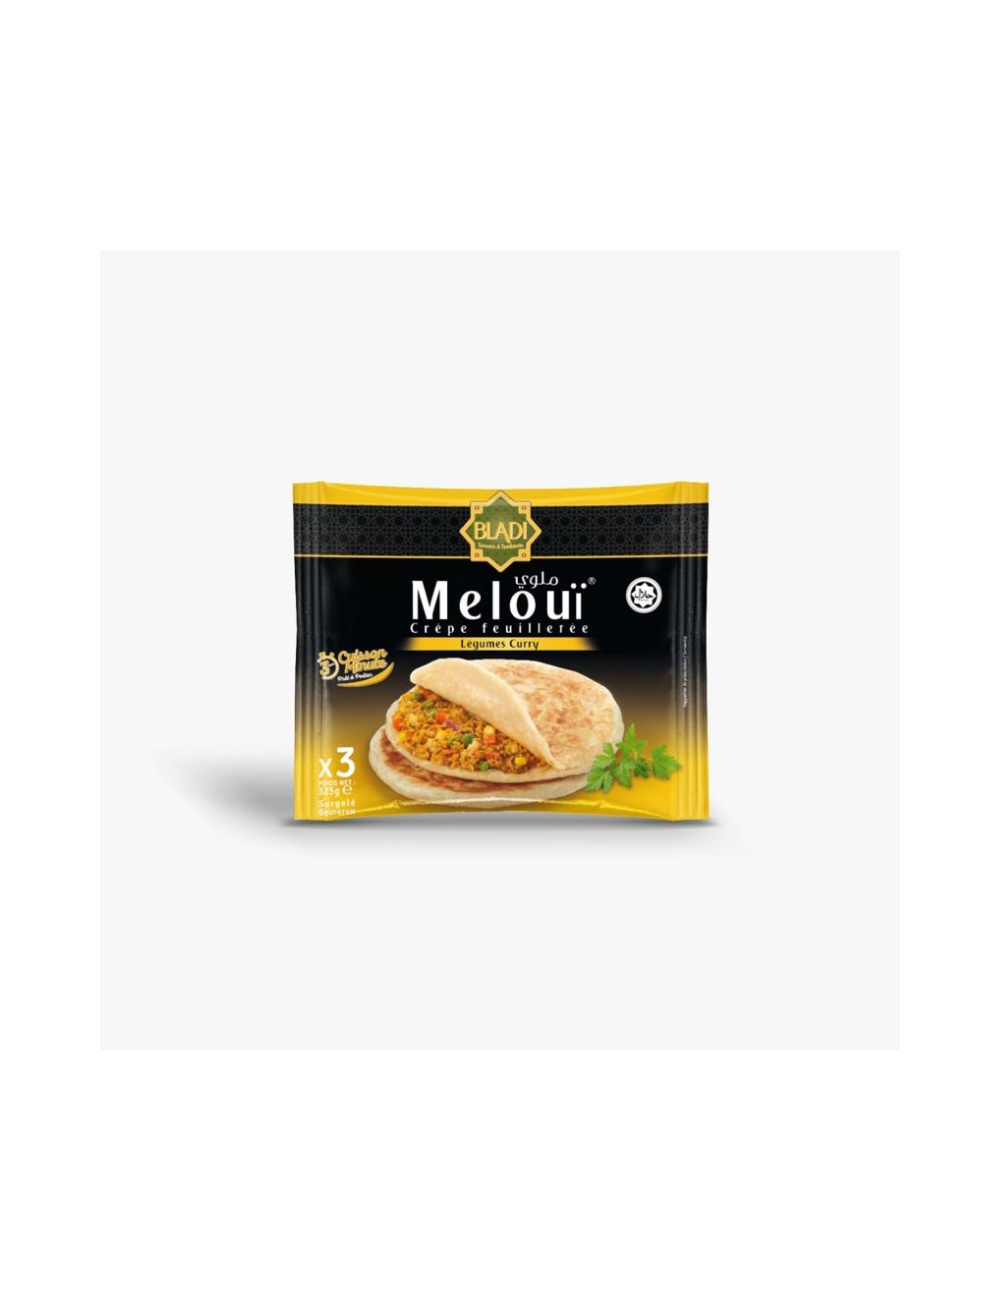 Meloui BLadi Légumes Curry x3